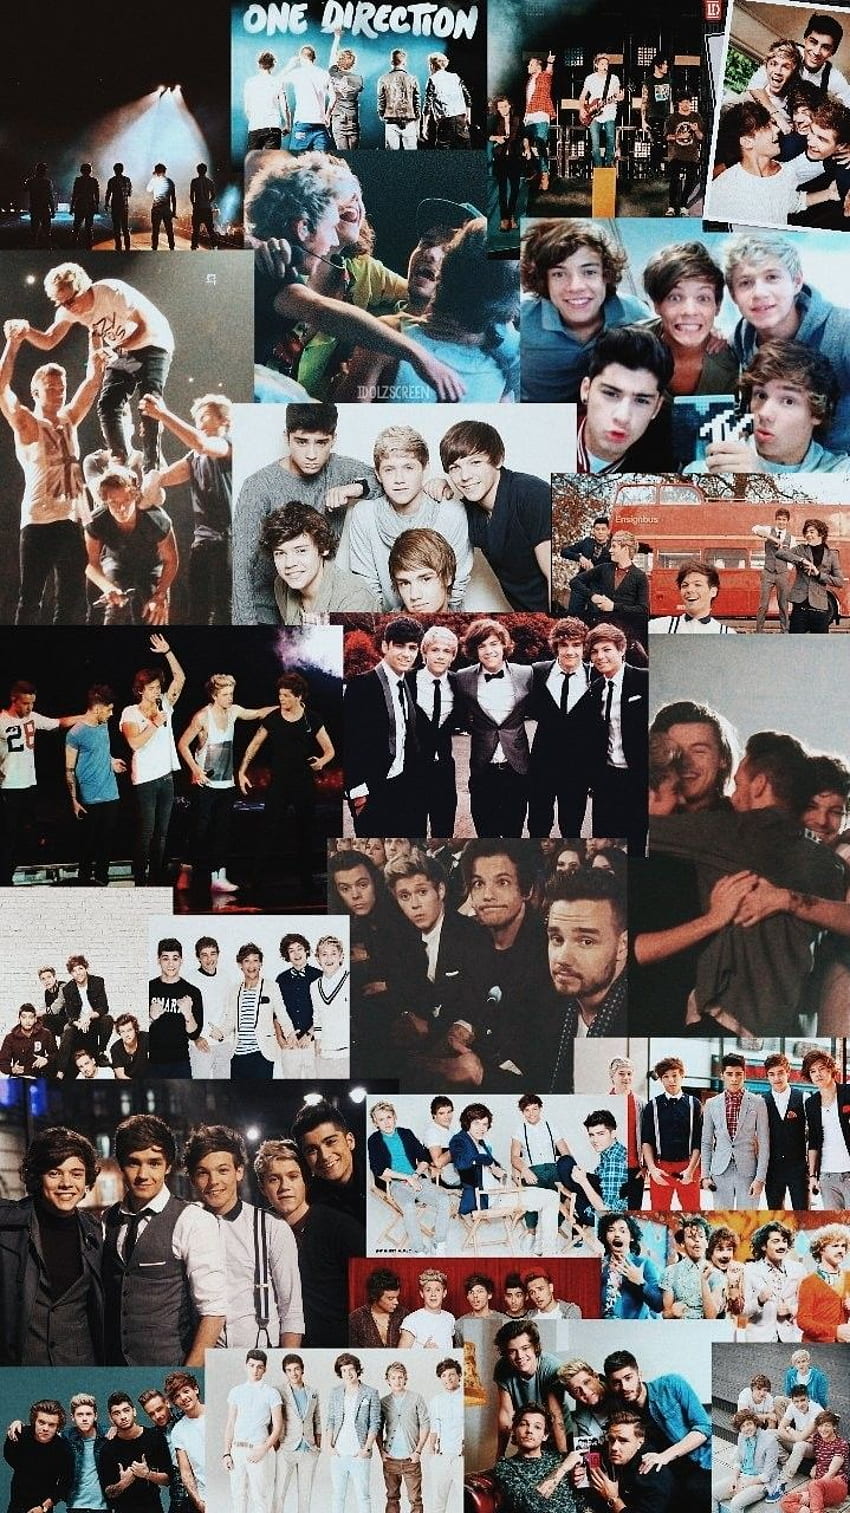 One Direction - , One Direction Background em Bat, One Direction Concert Papel de parede de celular HD